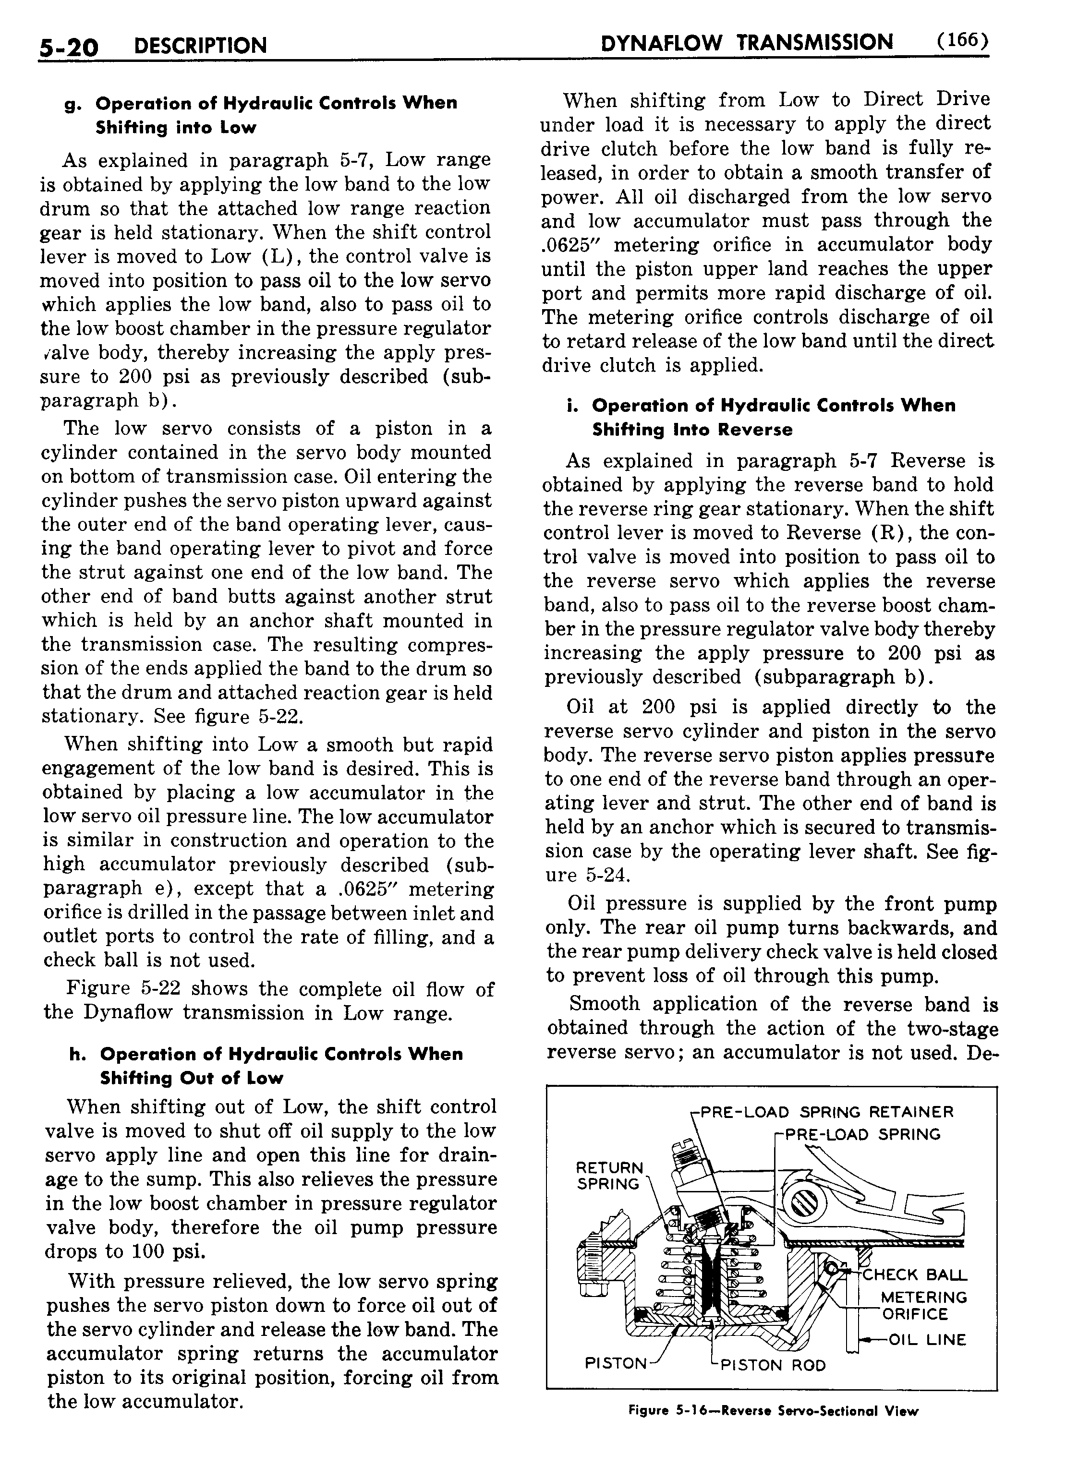 n_06 1956 Buick Shop Manual - Dynaflow-020-020.jpg